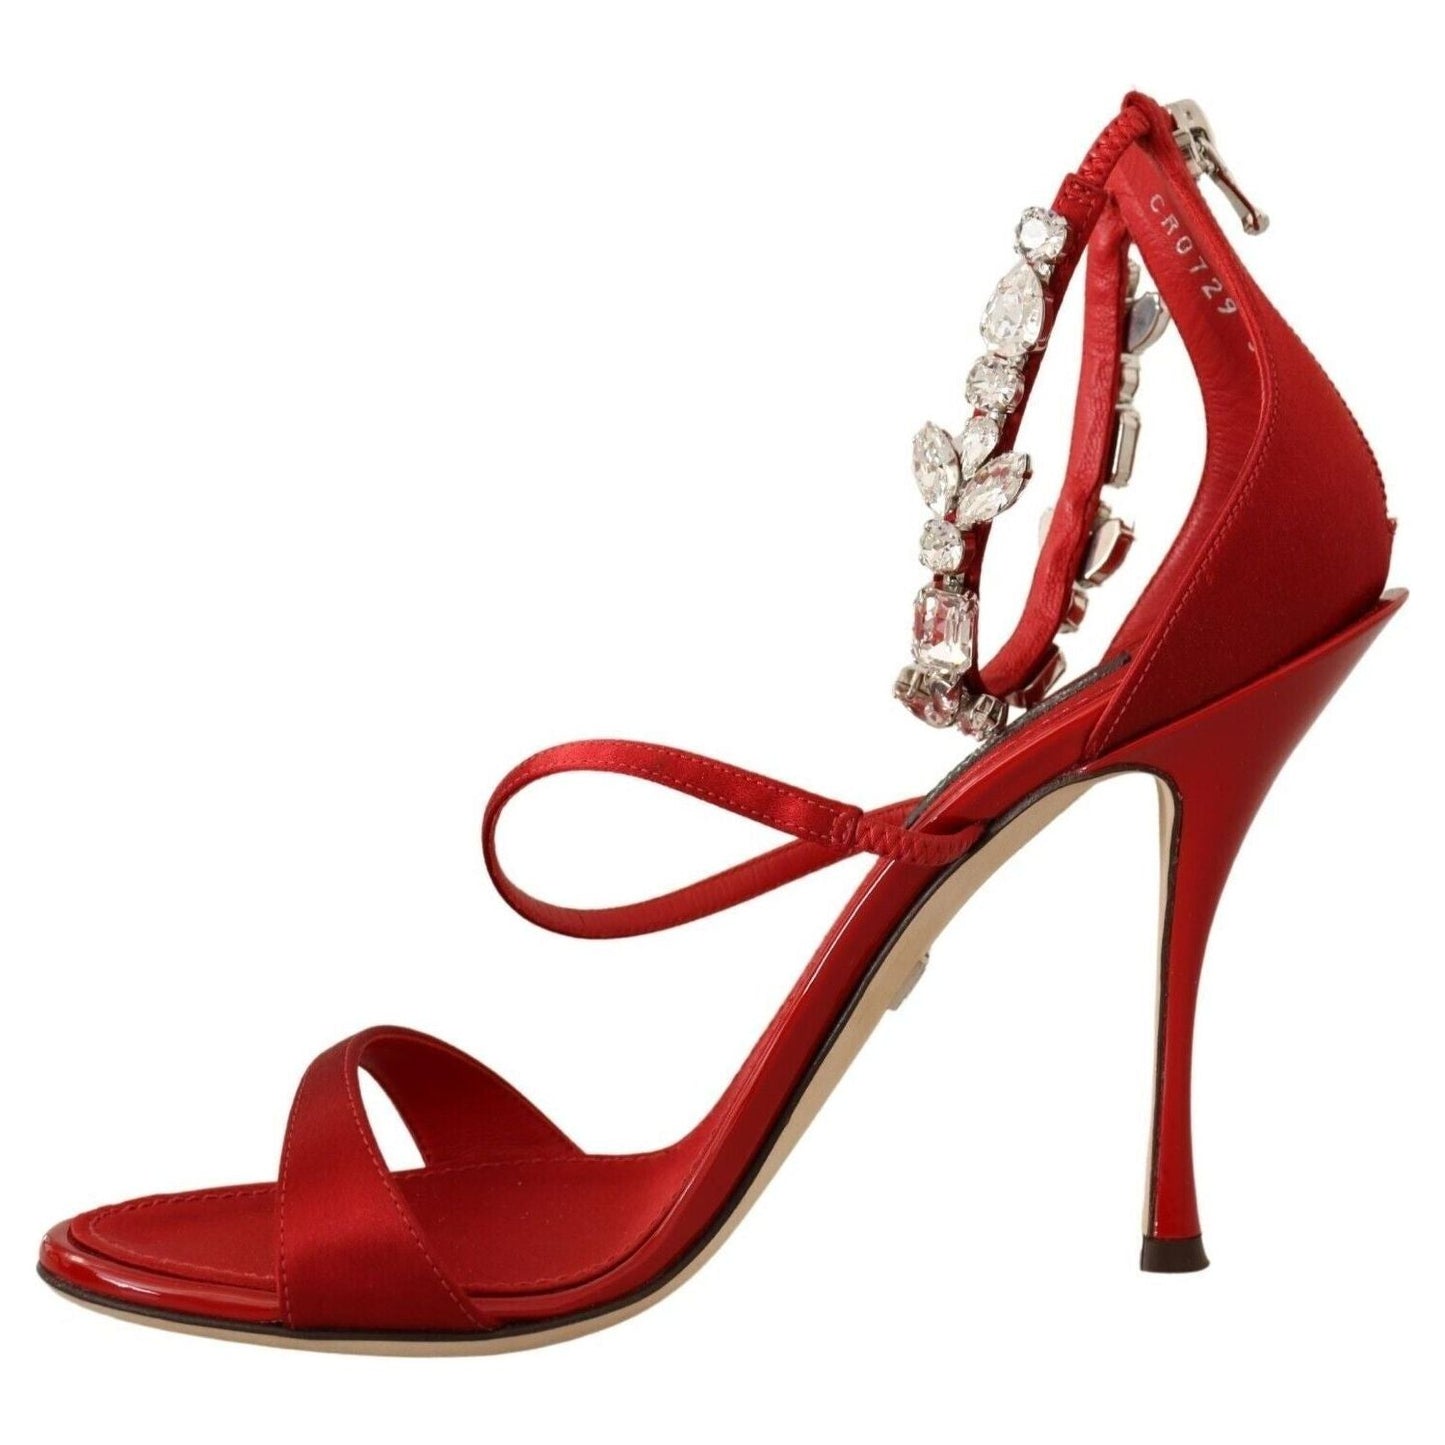 Dolce & Gabbana Red Crystal-Embellished Heel Sandals Heeled Sandals red-satin-crystals-sandals-keira-heels-shoes s-l1600-2022-11-15T152020.996-f262d640-cb0.jpg